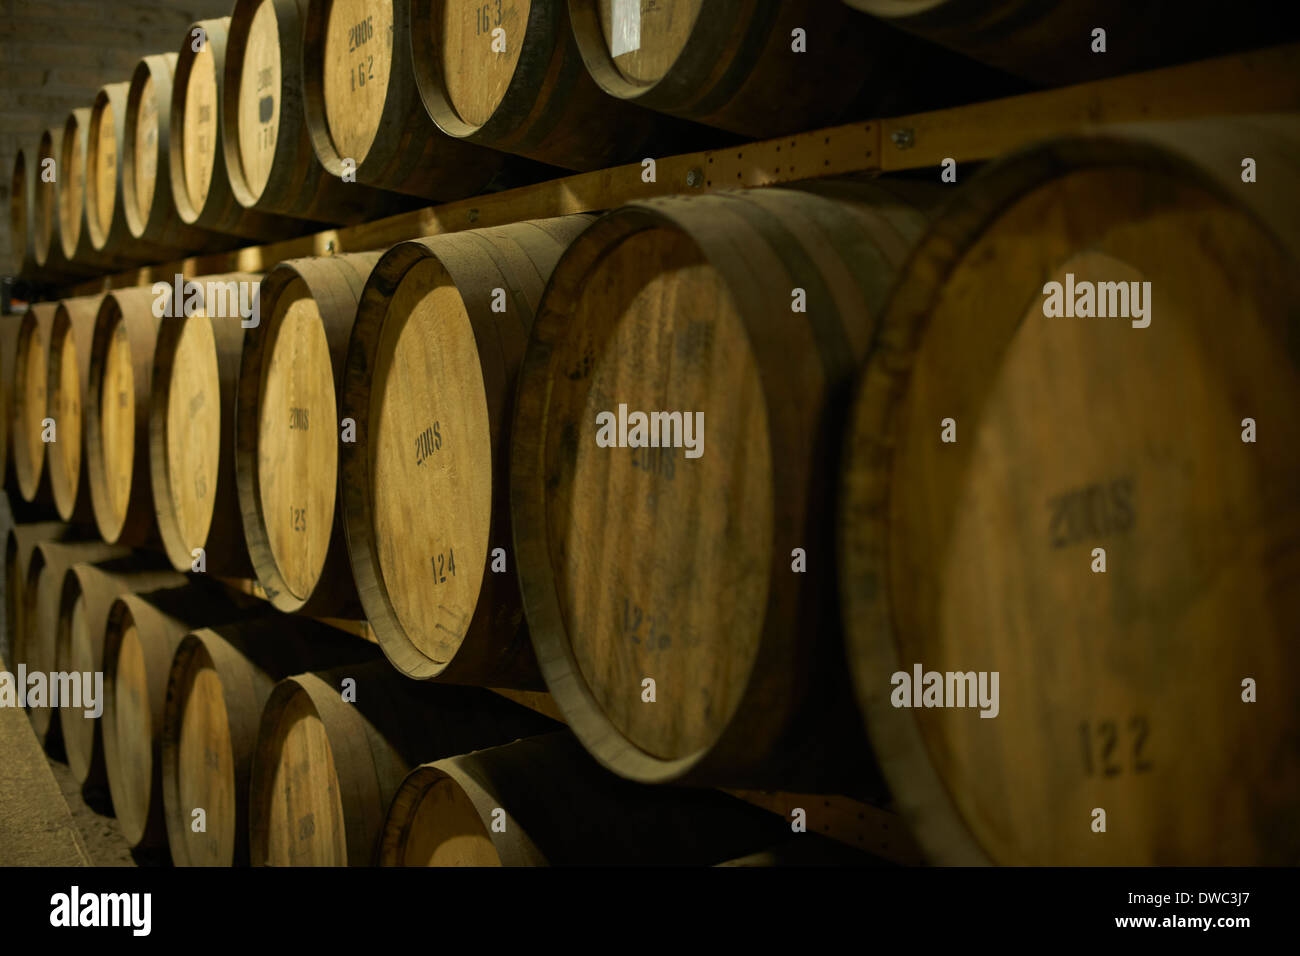 Stack of Scottish whisky barrels Stock Photo